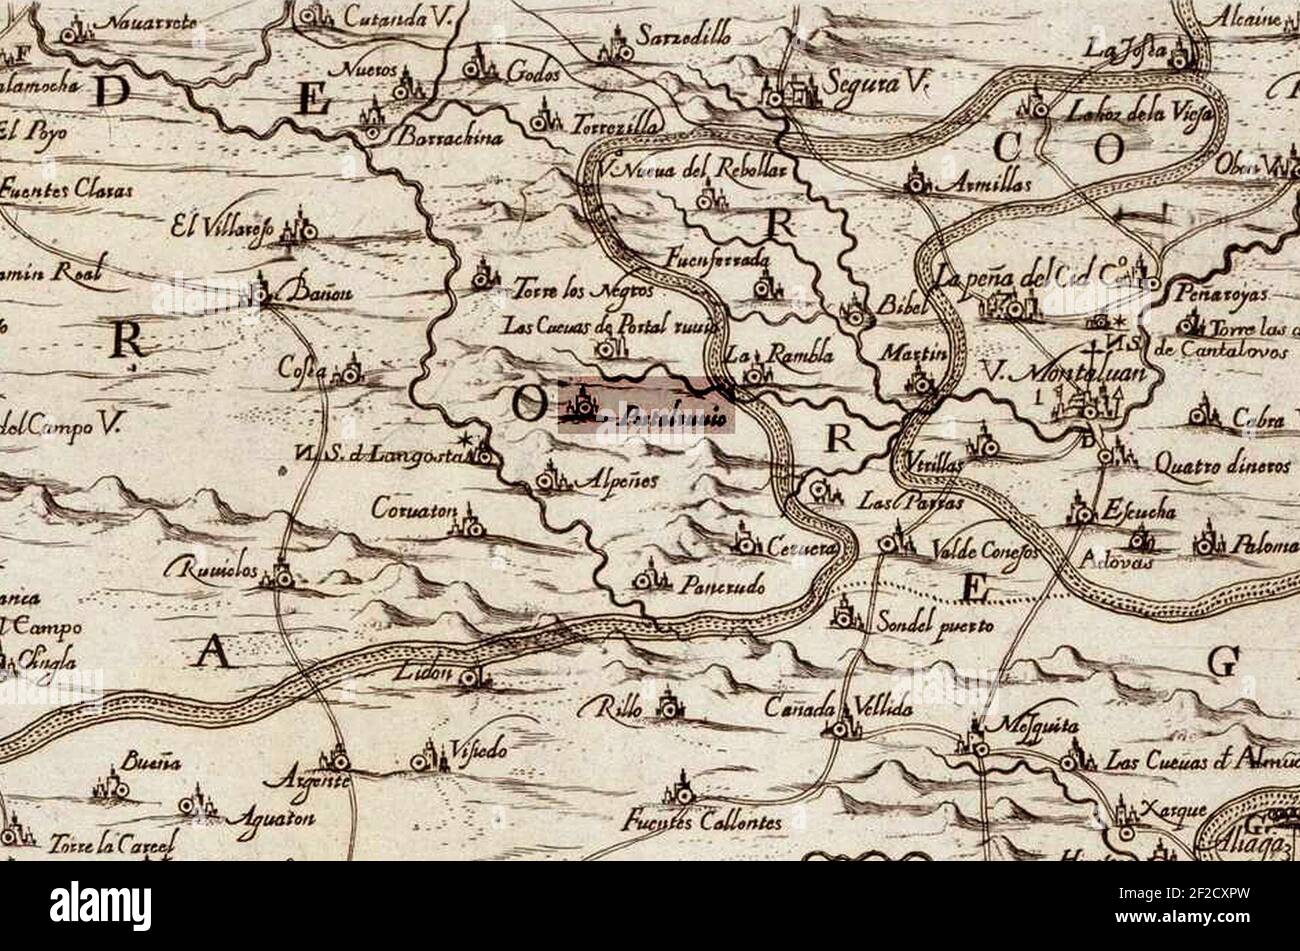 Portalrubio en el mapa de Labaña (1619). Stock Photo